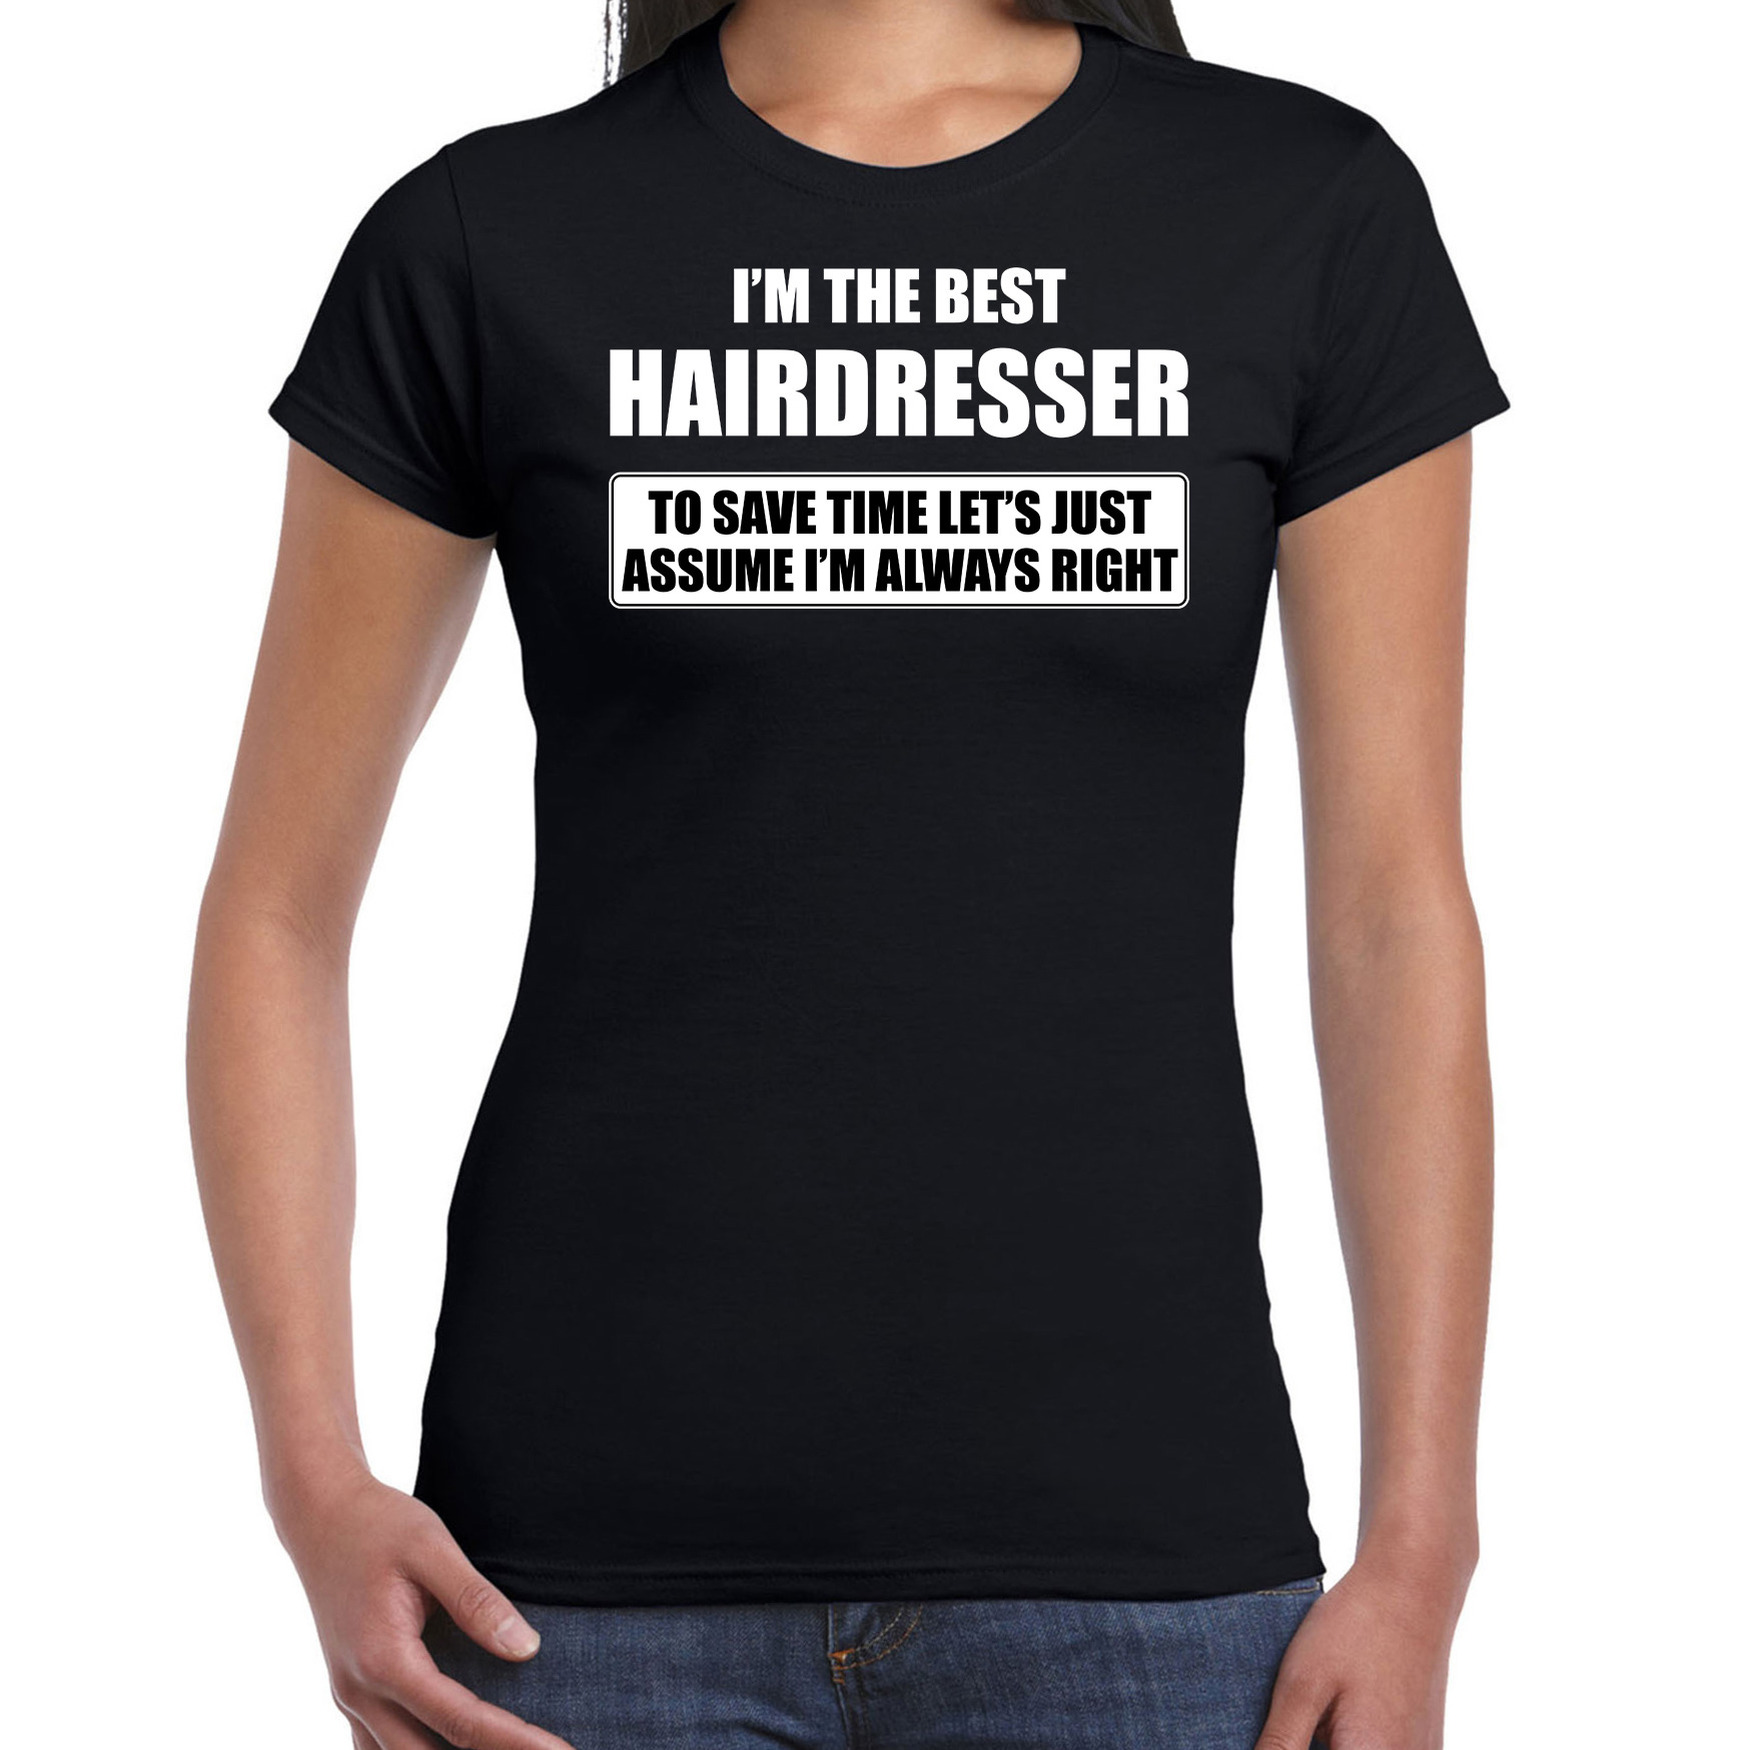 I'm the best hairdresser t-shirt zwart dames De beste kapster cadeau